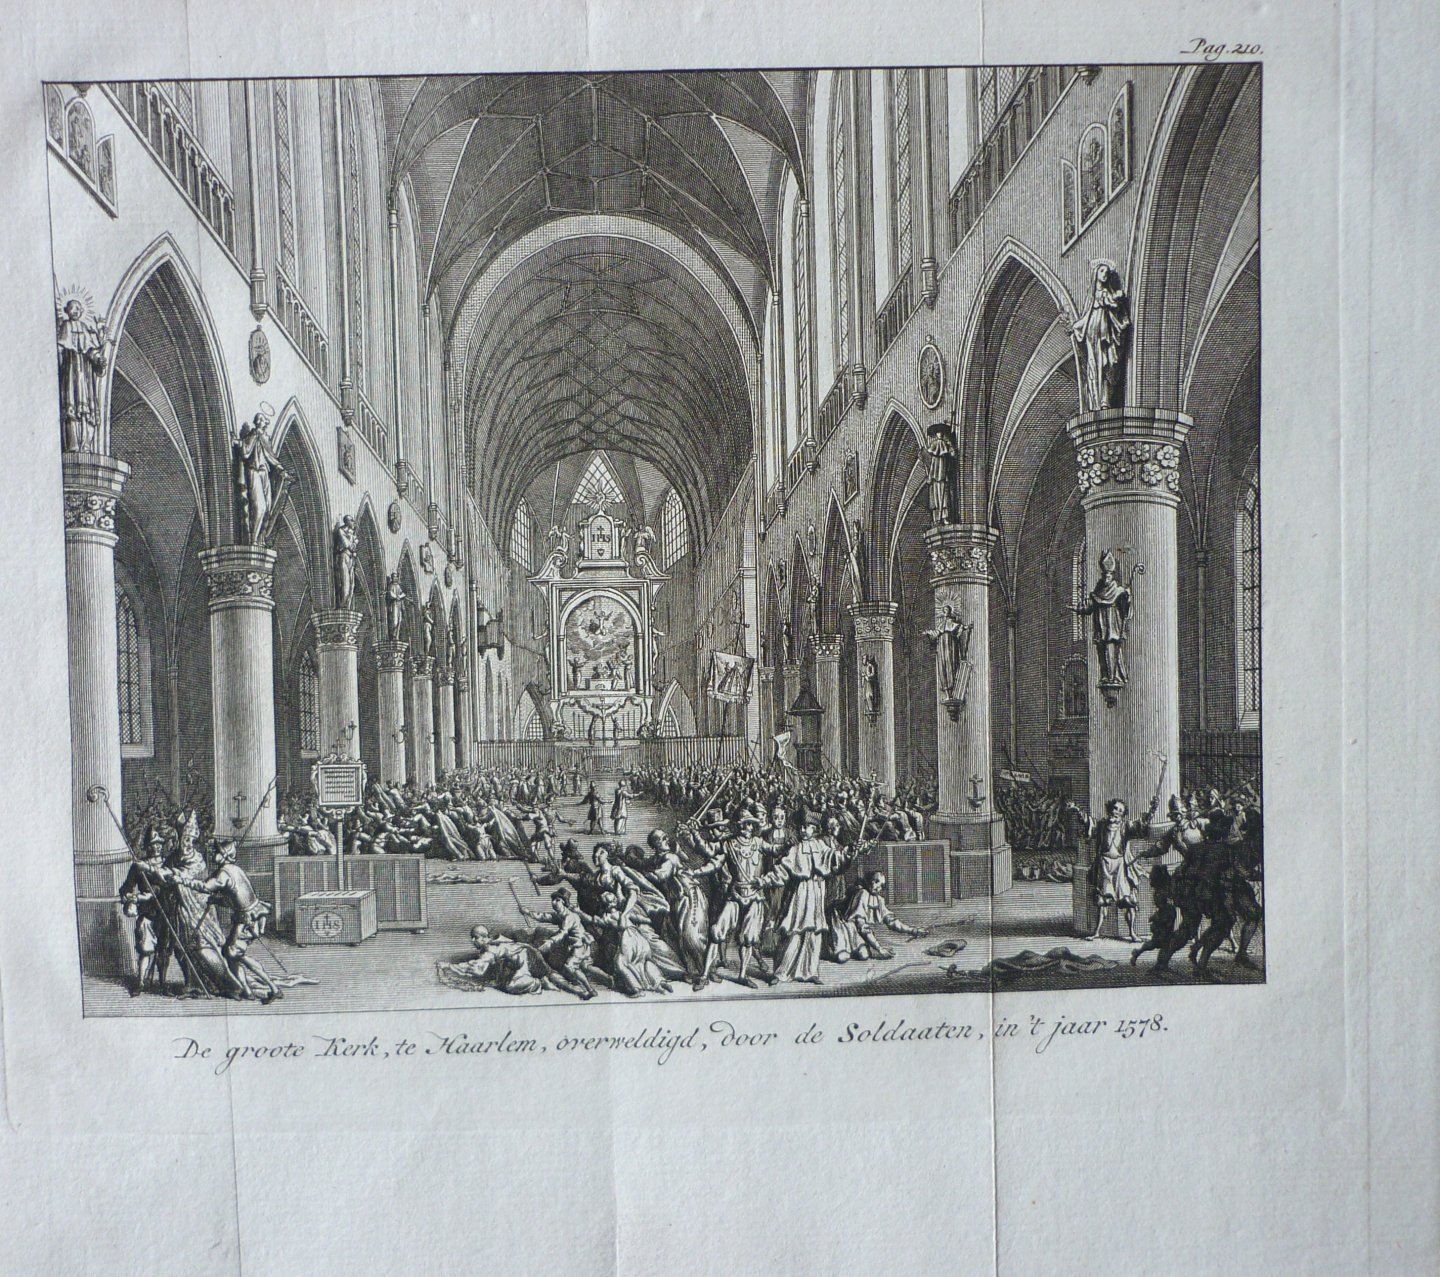 Fokke, S. / Wagenaar J. - De groote Kerk te Haarlem overweldigd door de soldaten in 't jaar 1578. Originele kopergravure.